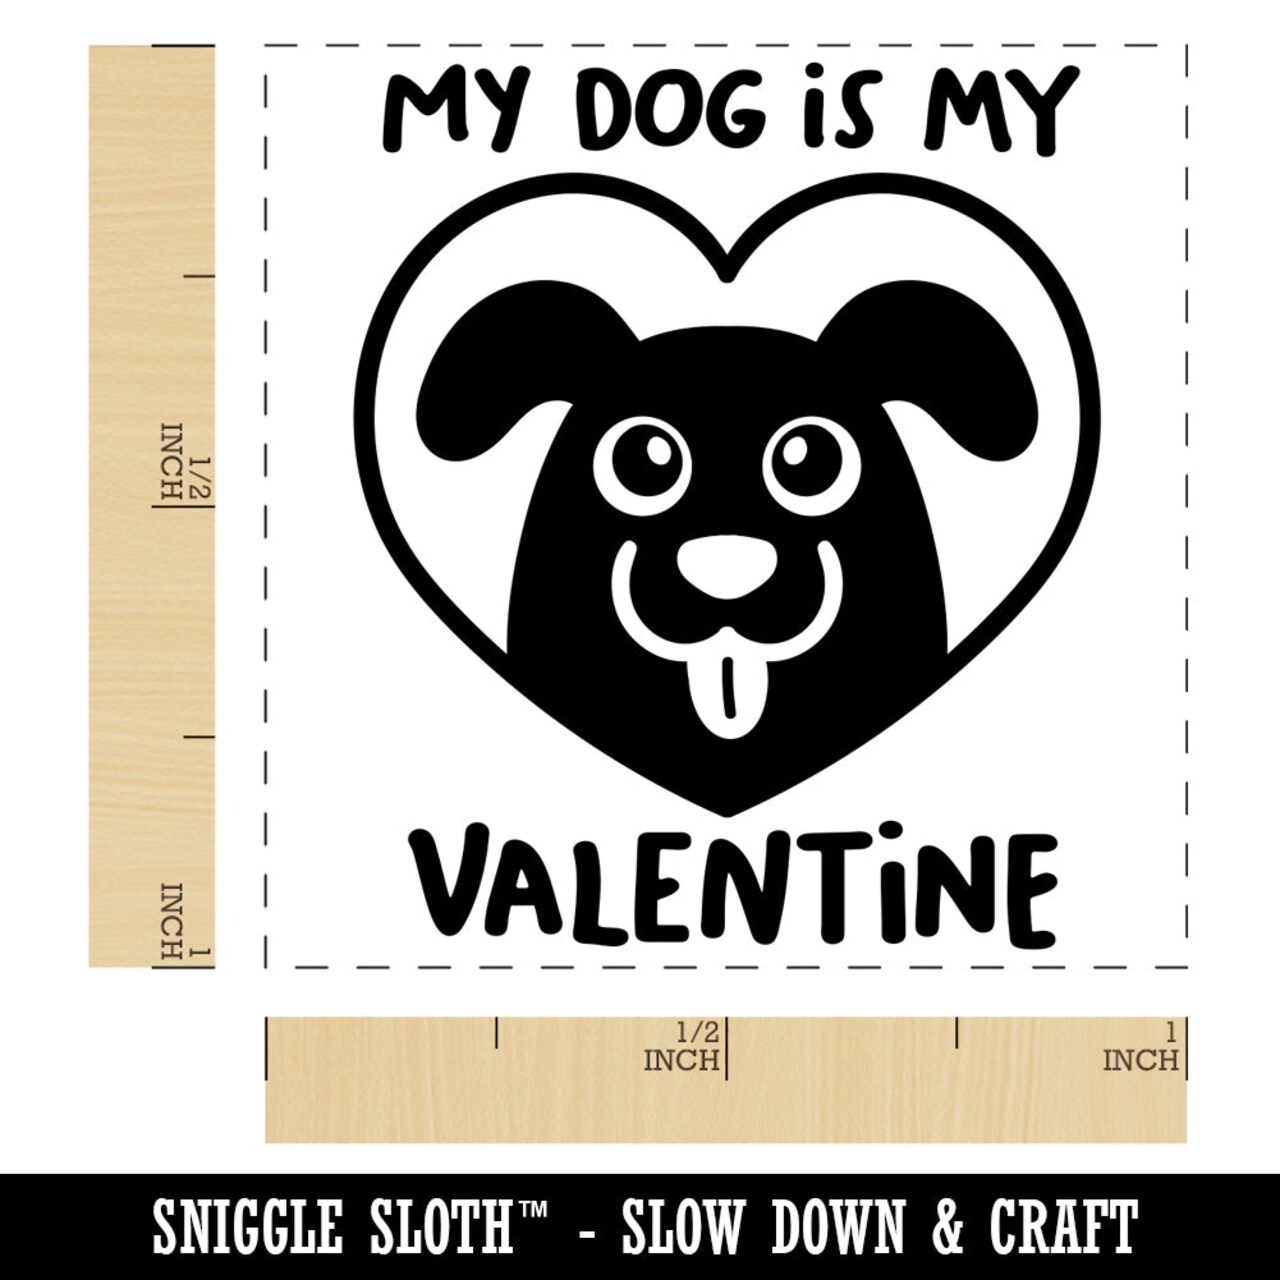 My Dog is My Valentine Self-Inking Rubber Stamp Ink Stamper